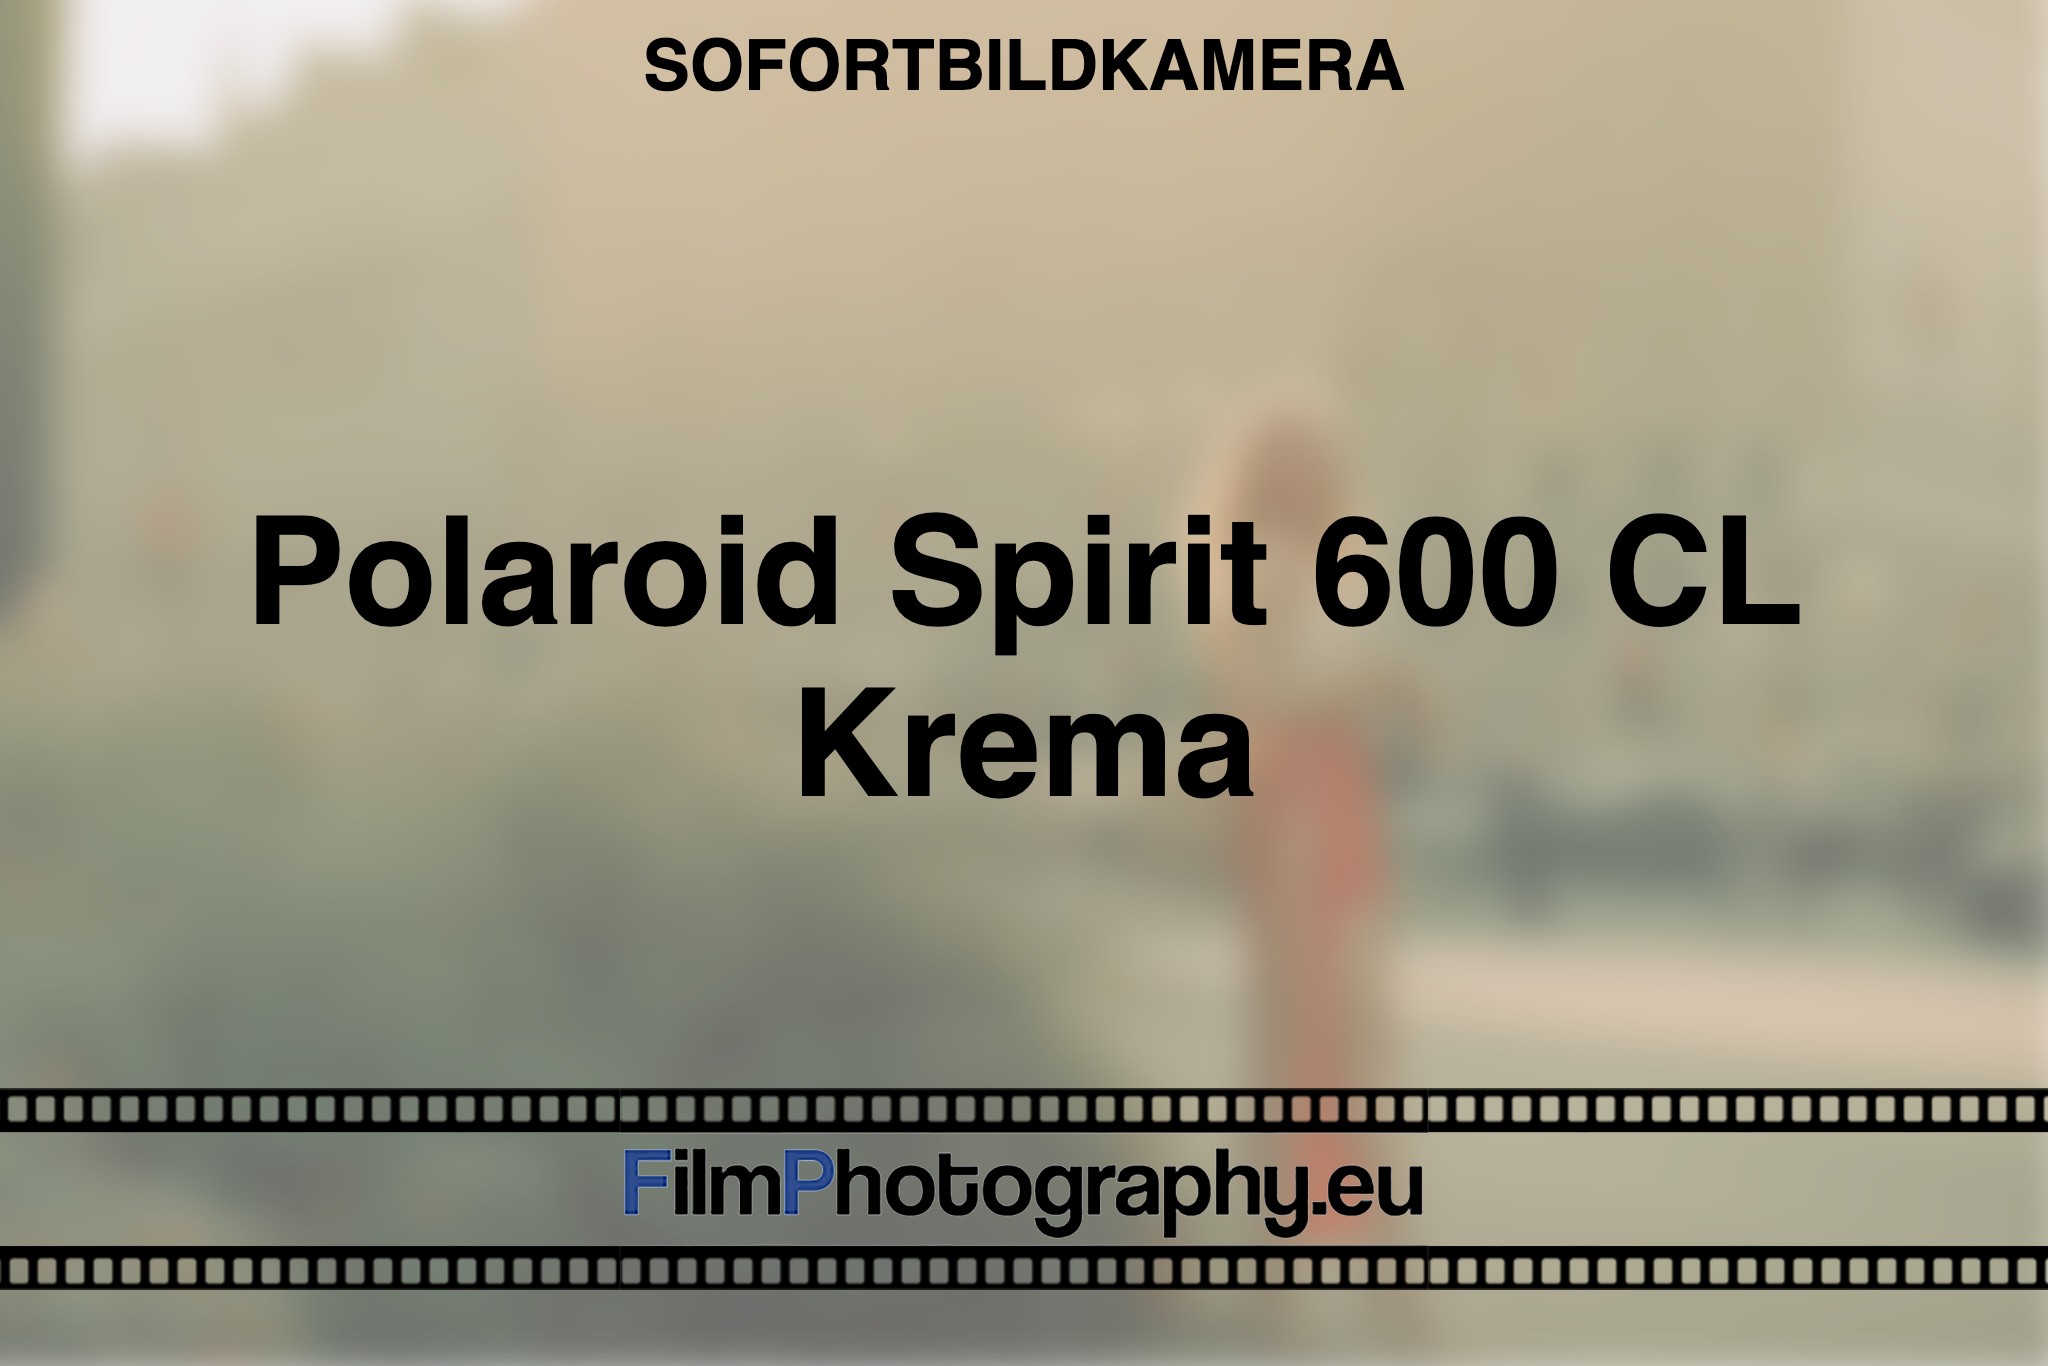 polaroid-spirit-600-cl-krema-sofortbildkamera-bnv